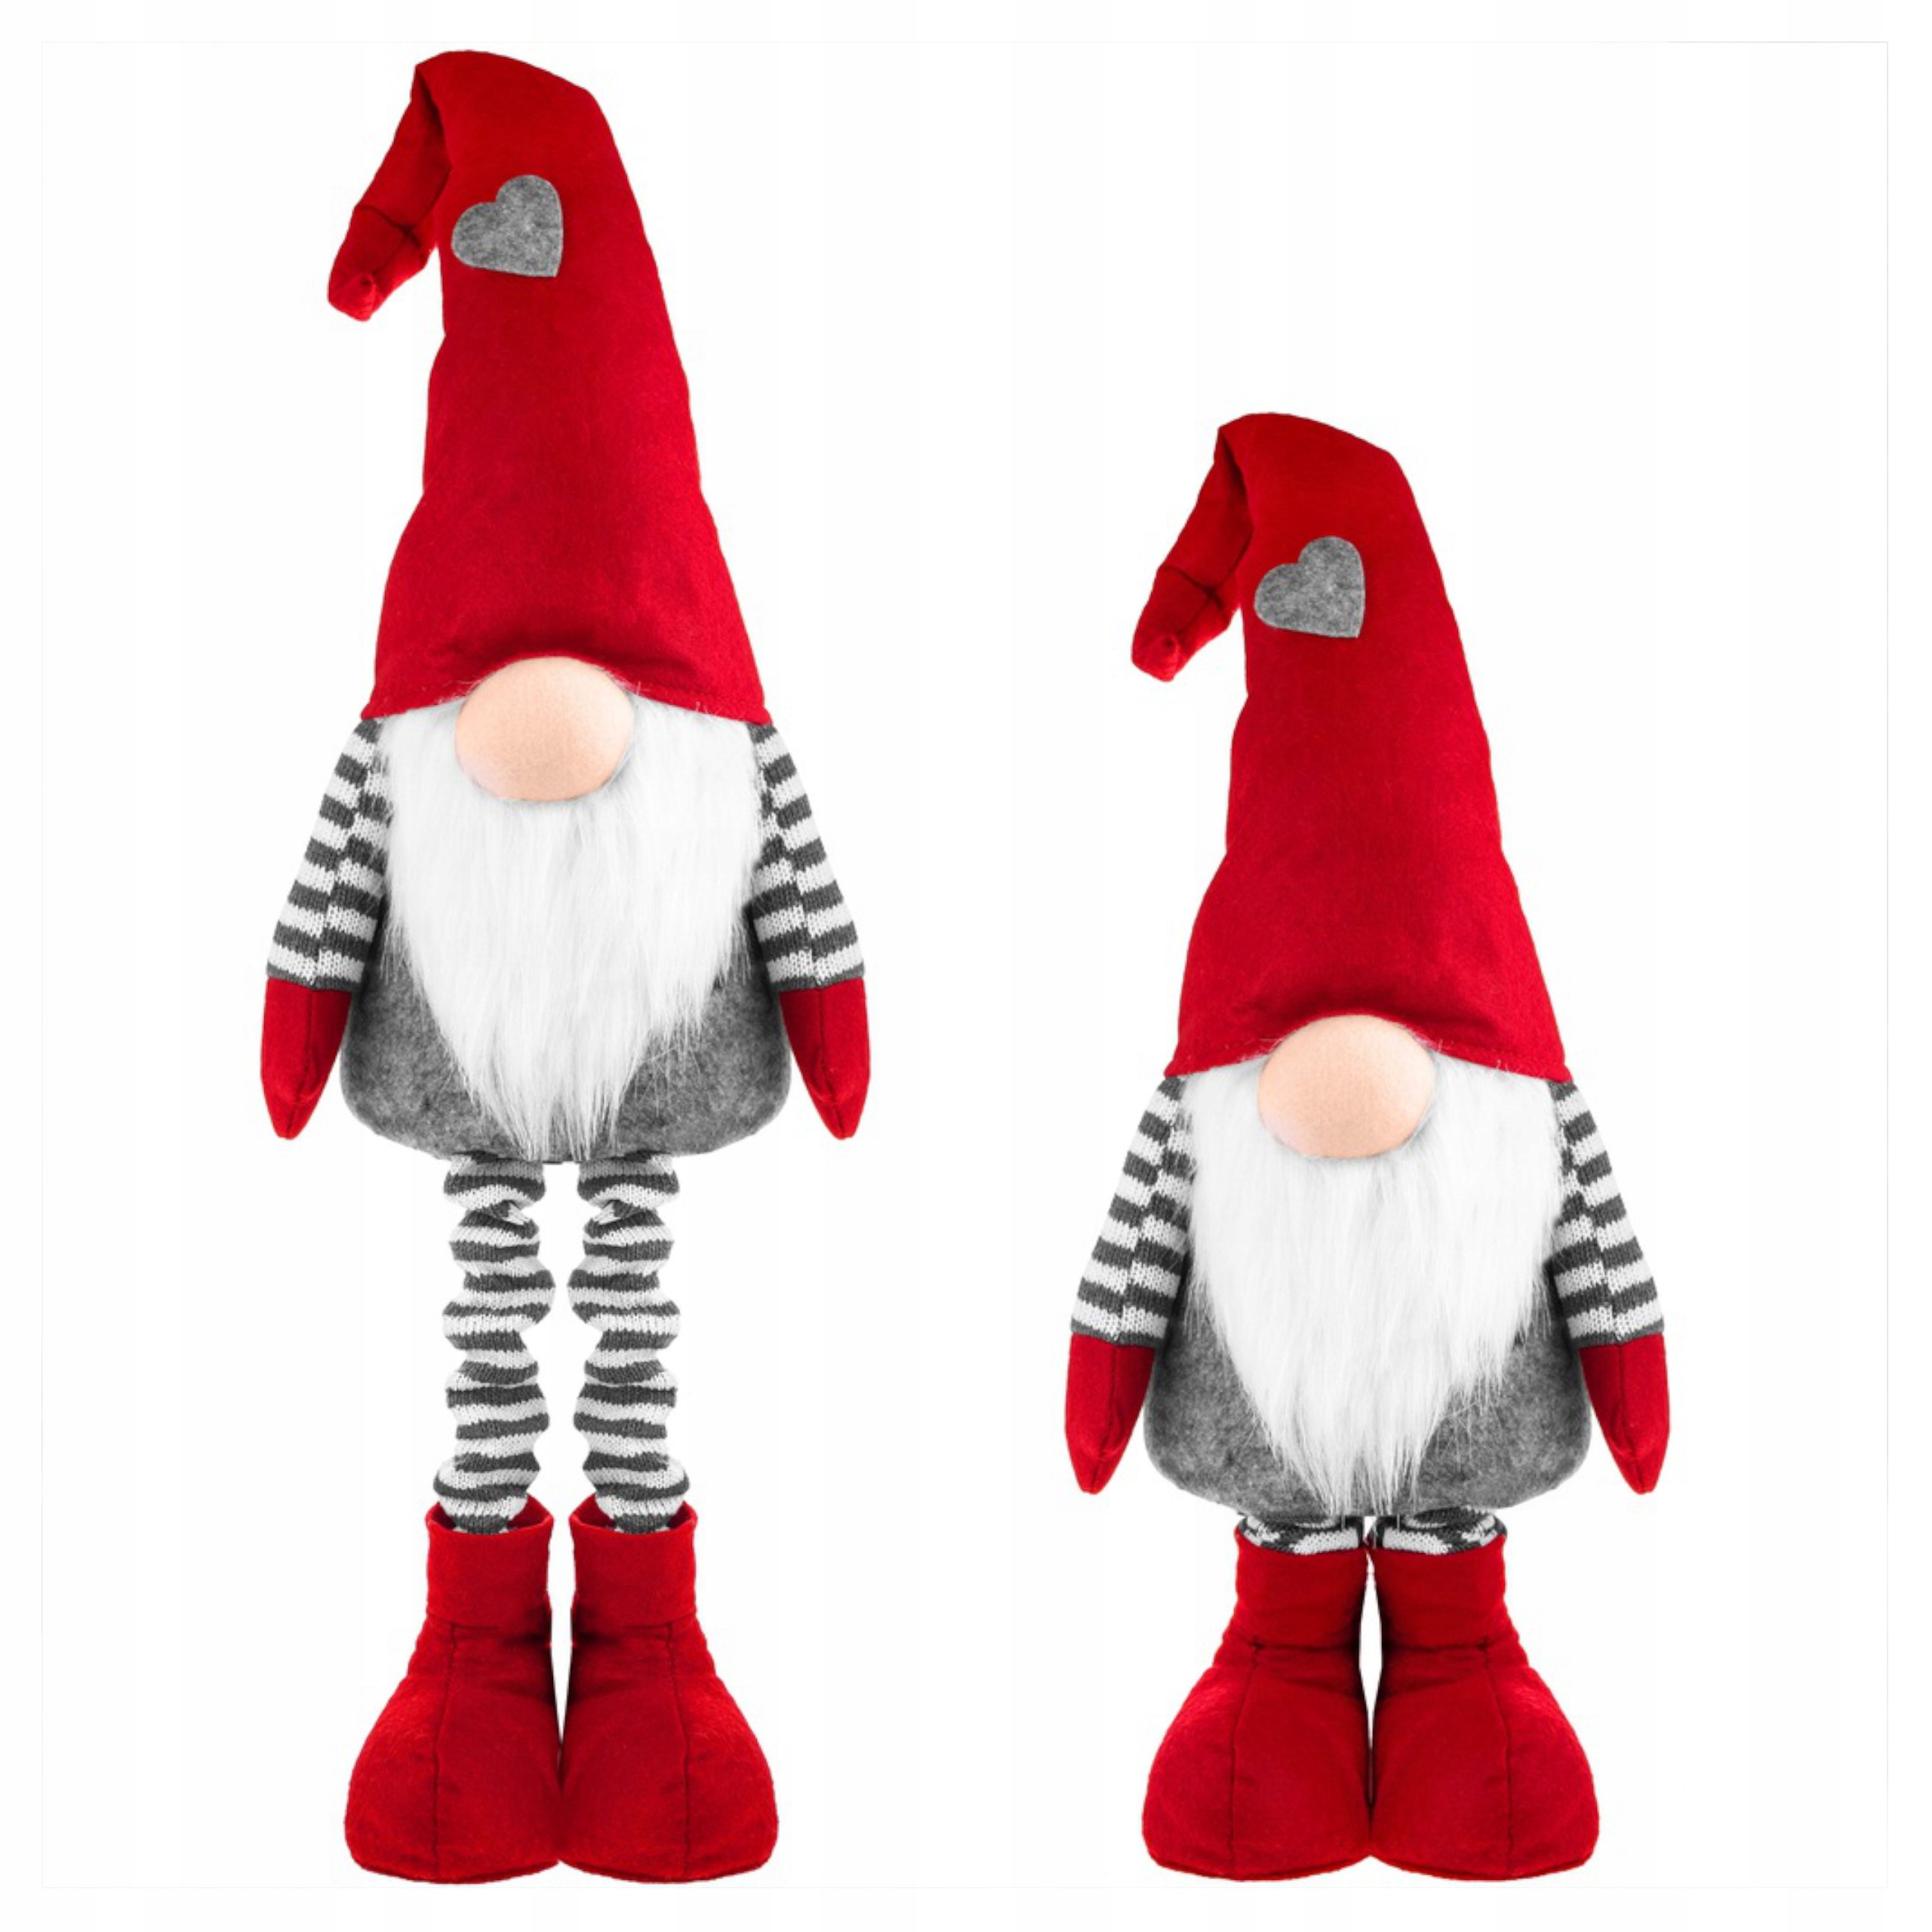 Skrzat świąteczny 110-160cm, krasnal na teleskopowych nogach, gnom.  Traduisez en français : Lutin de Noël de 110 à 160 cm, nain sur des pieds  télescopiques, gnome.